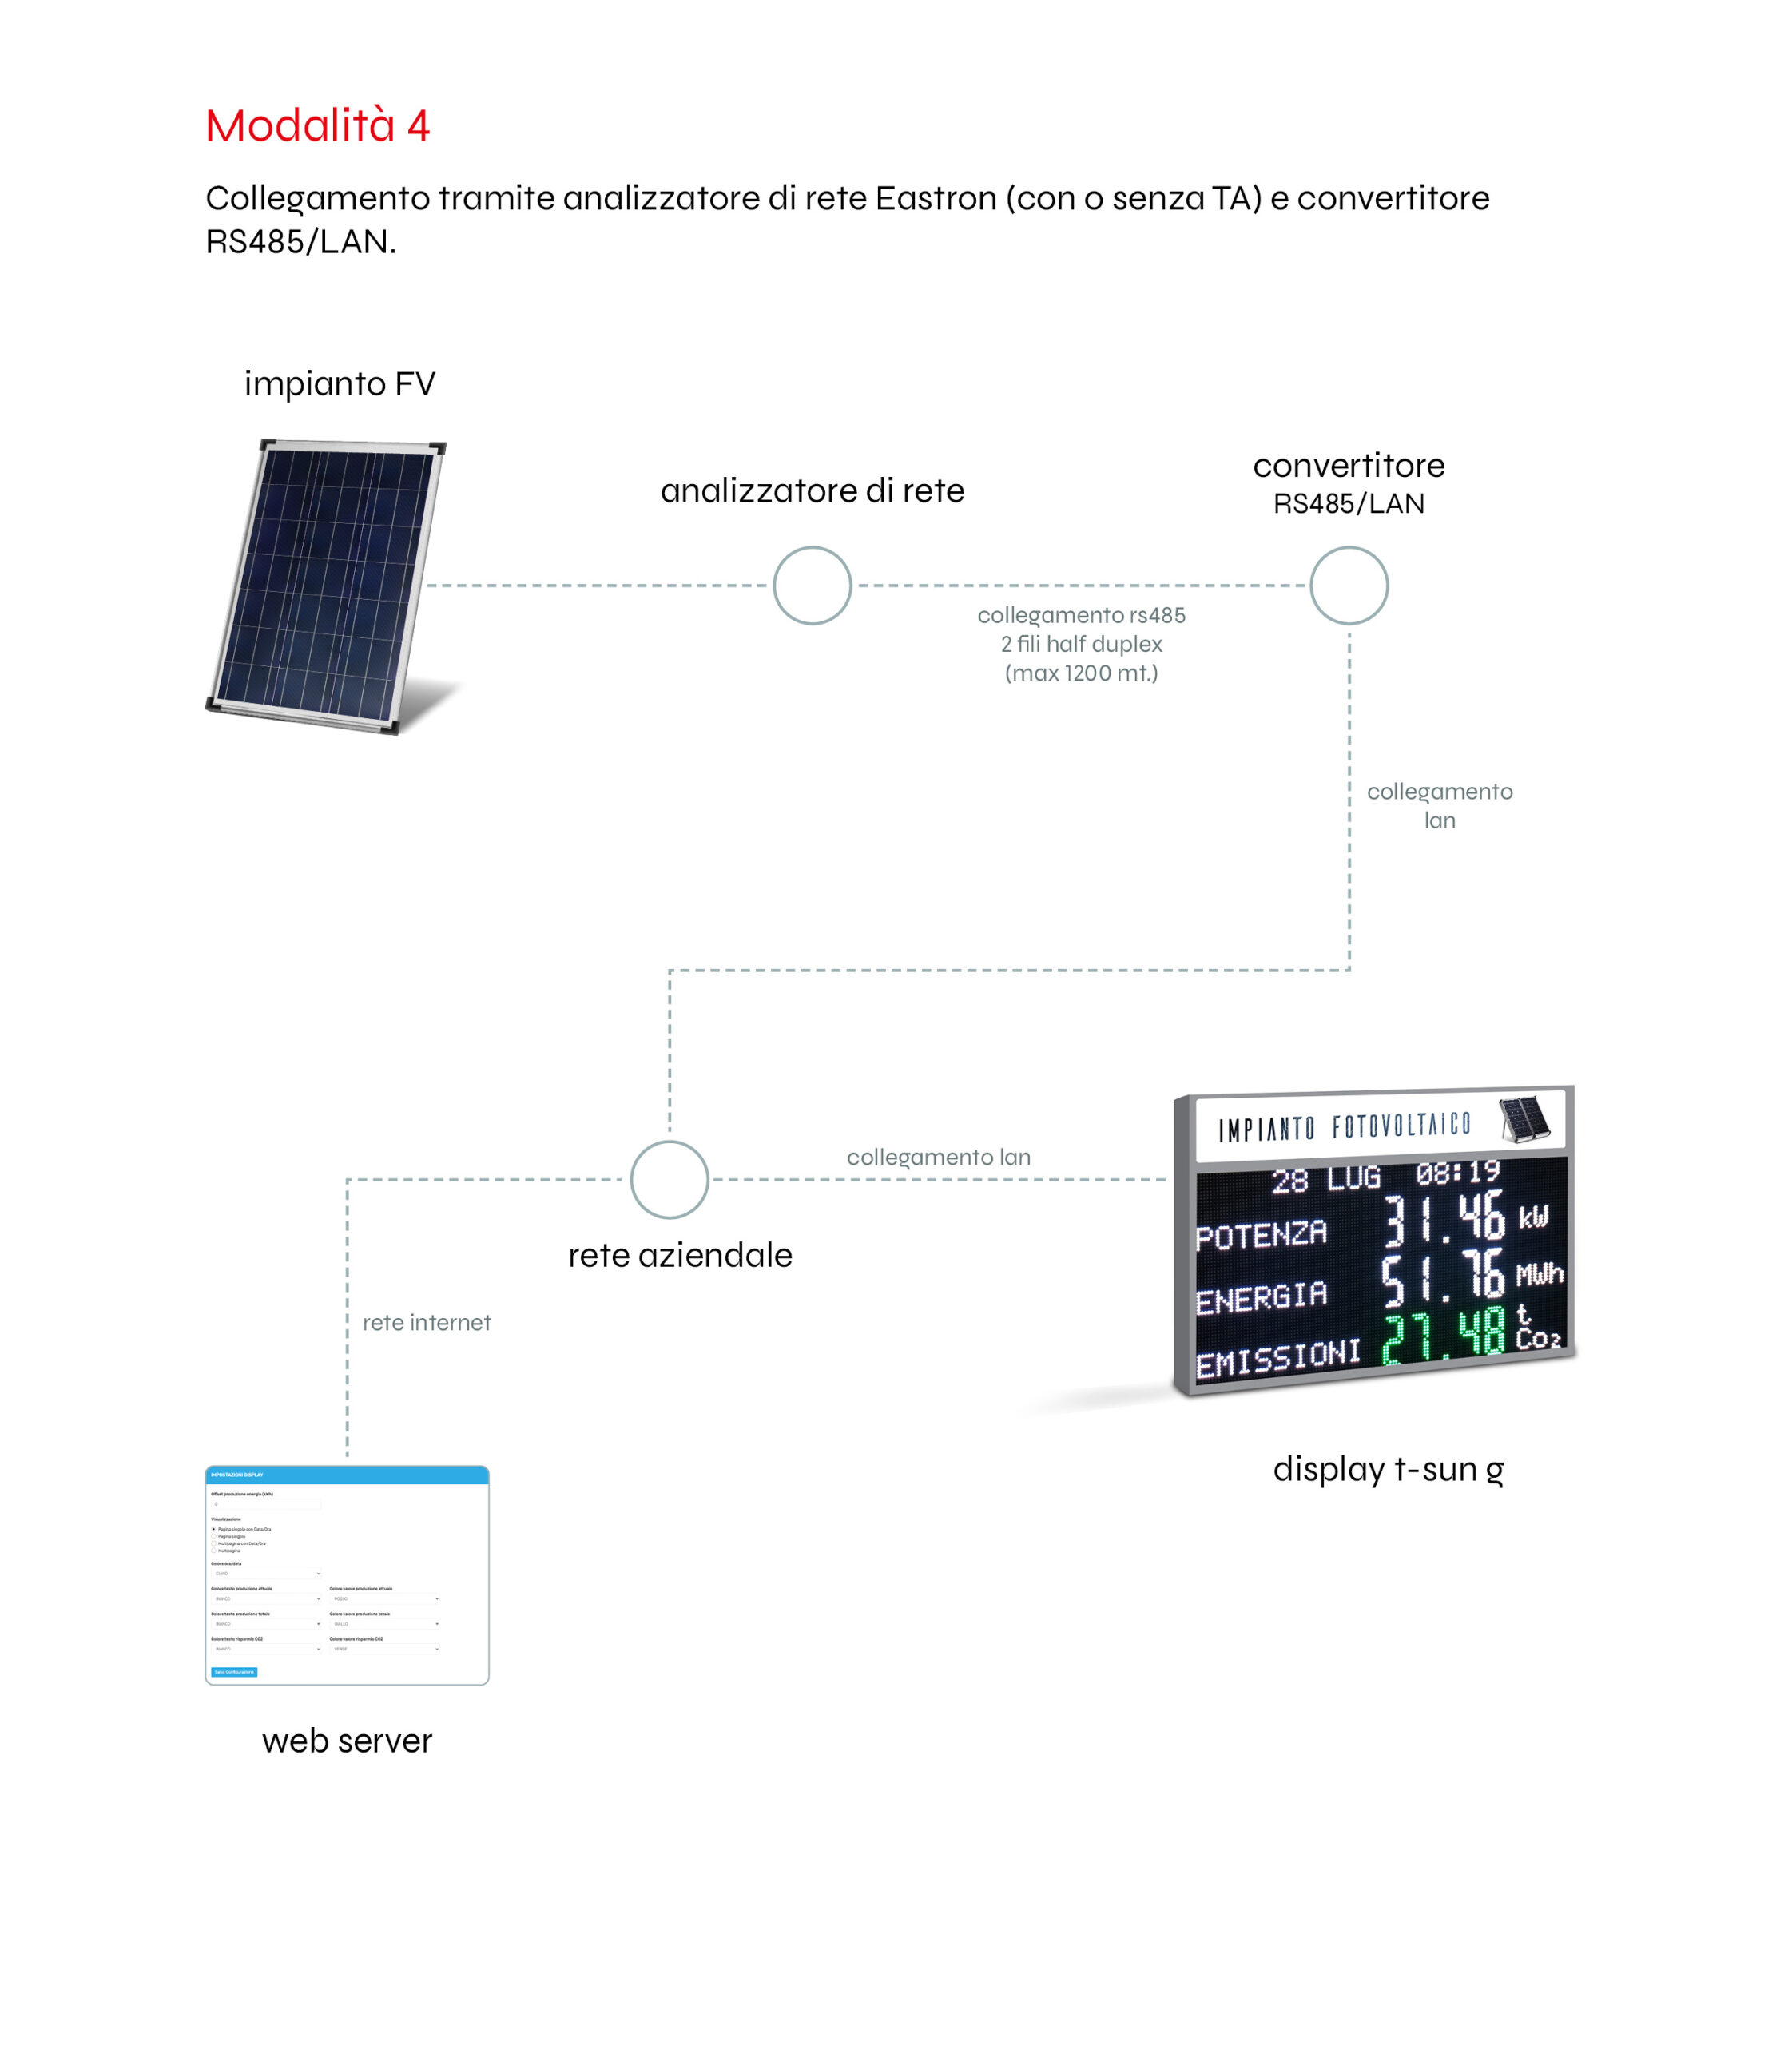 collegamento con convertitore RS485/LAN